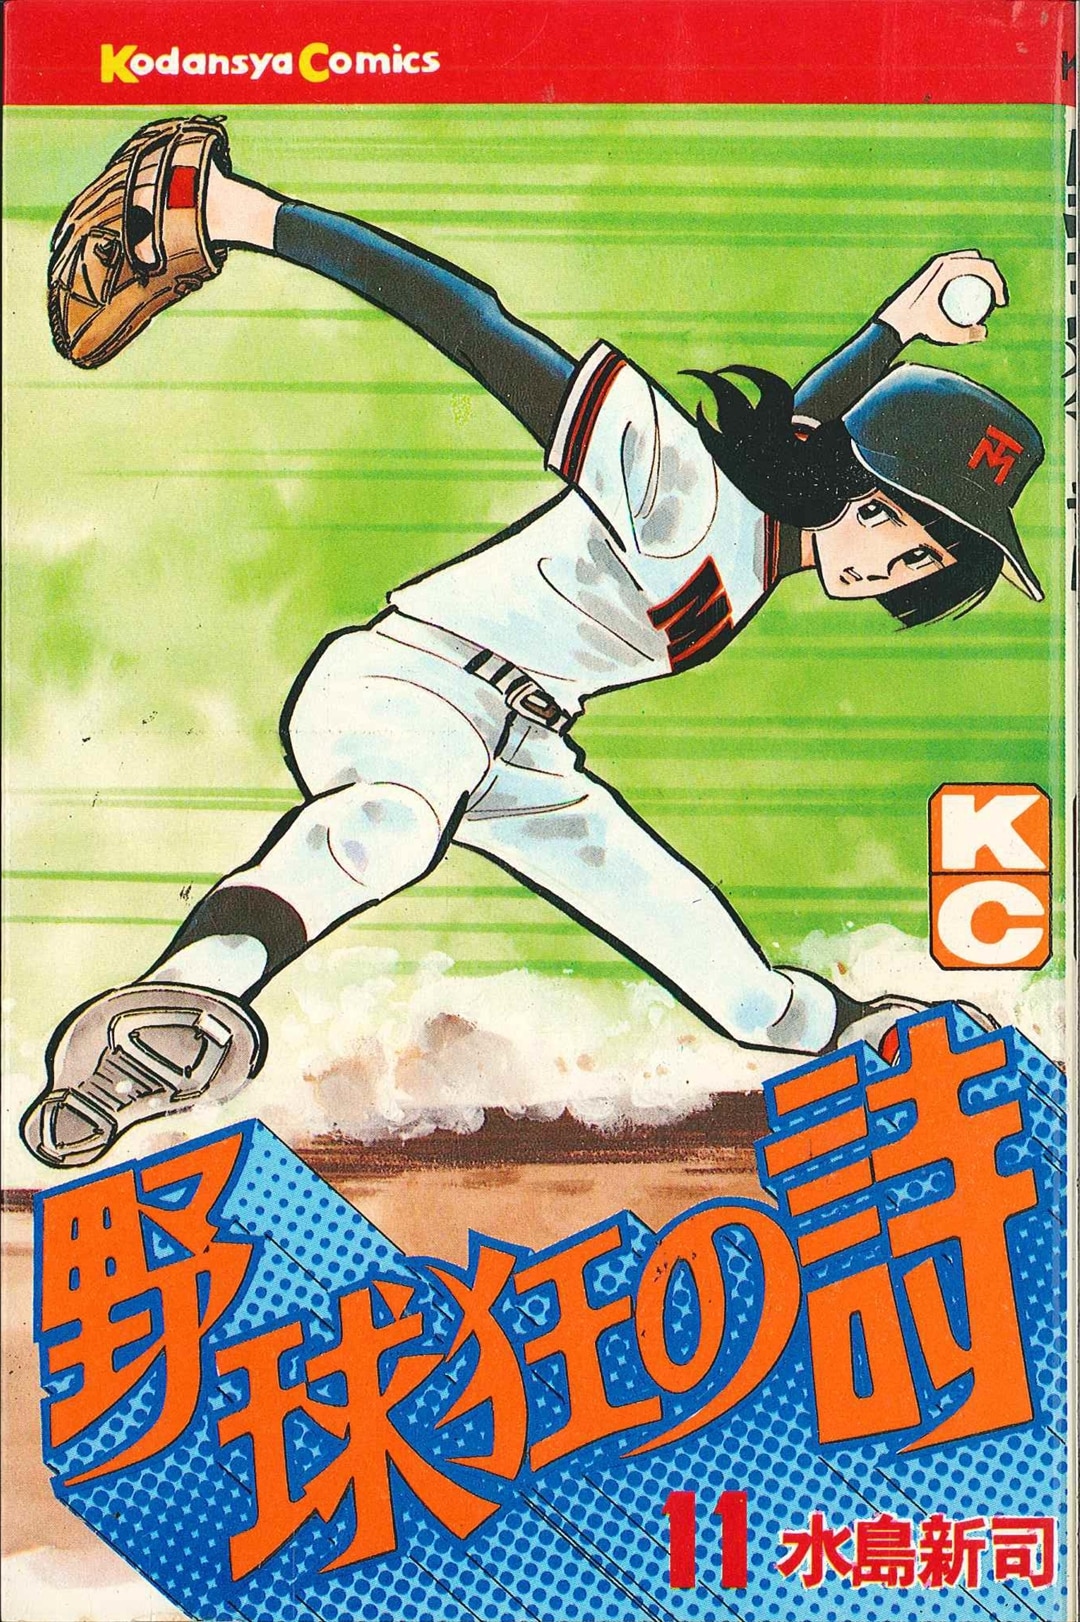 故 水島新司先生の作品 野球狂の詩1～17巻 - マンガ、コミック、アニメ